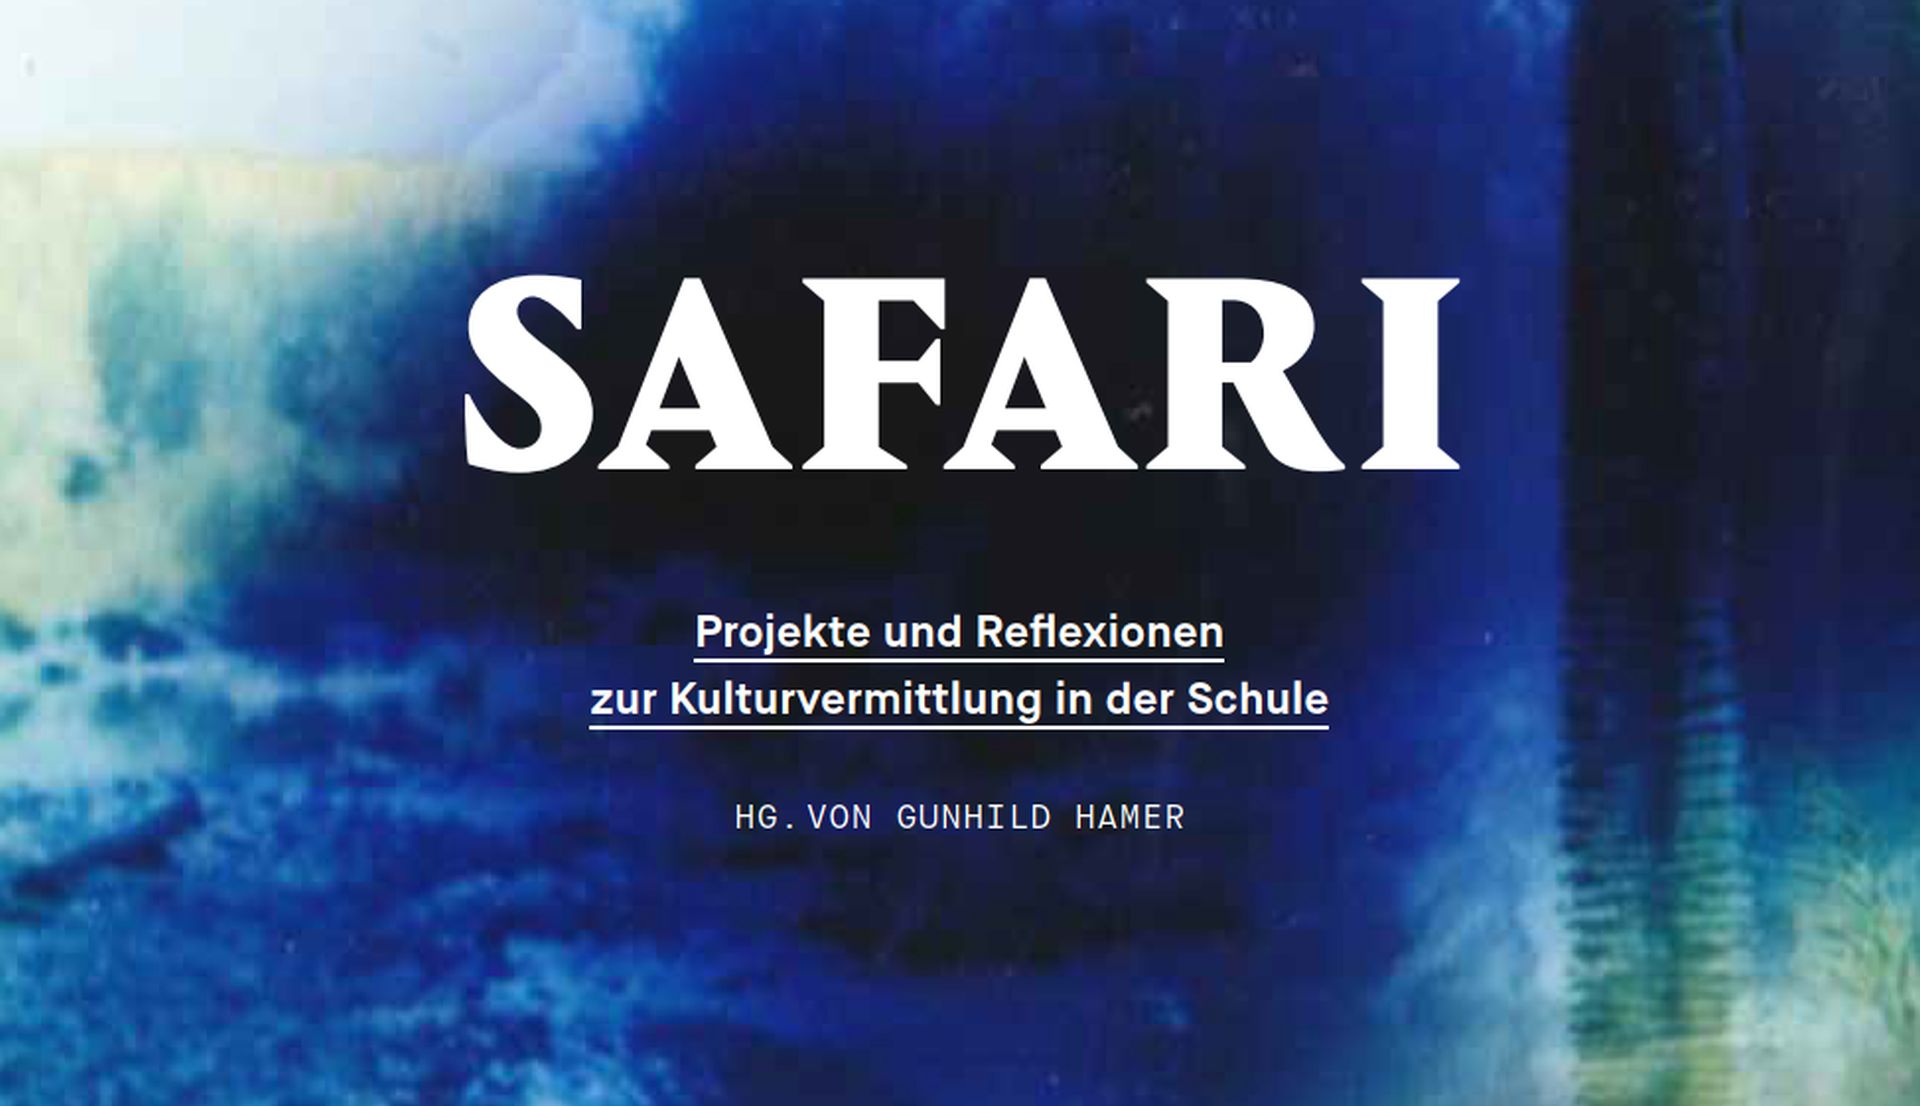 Farbiges Cover mit Titel "SAFARI - Projekte und Reflexionen zur Kulturvermittlung in der Schule